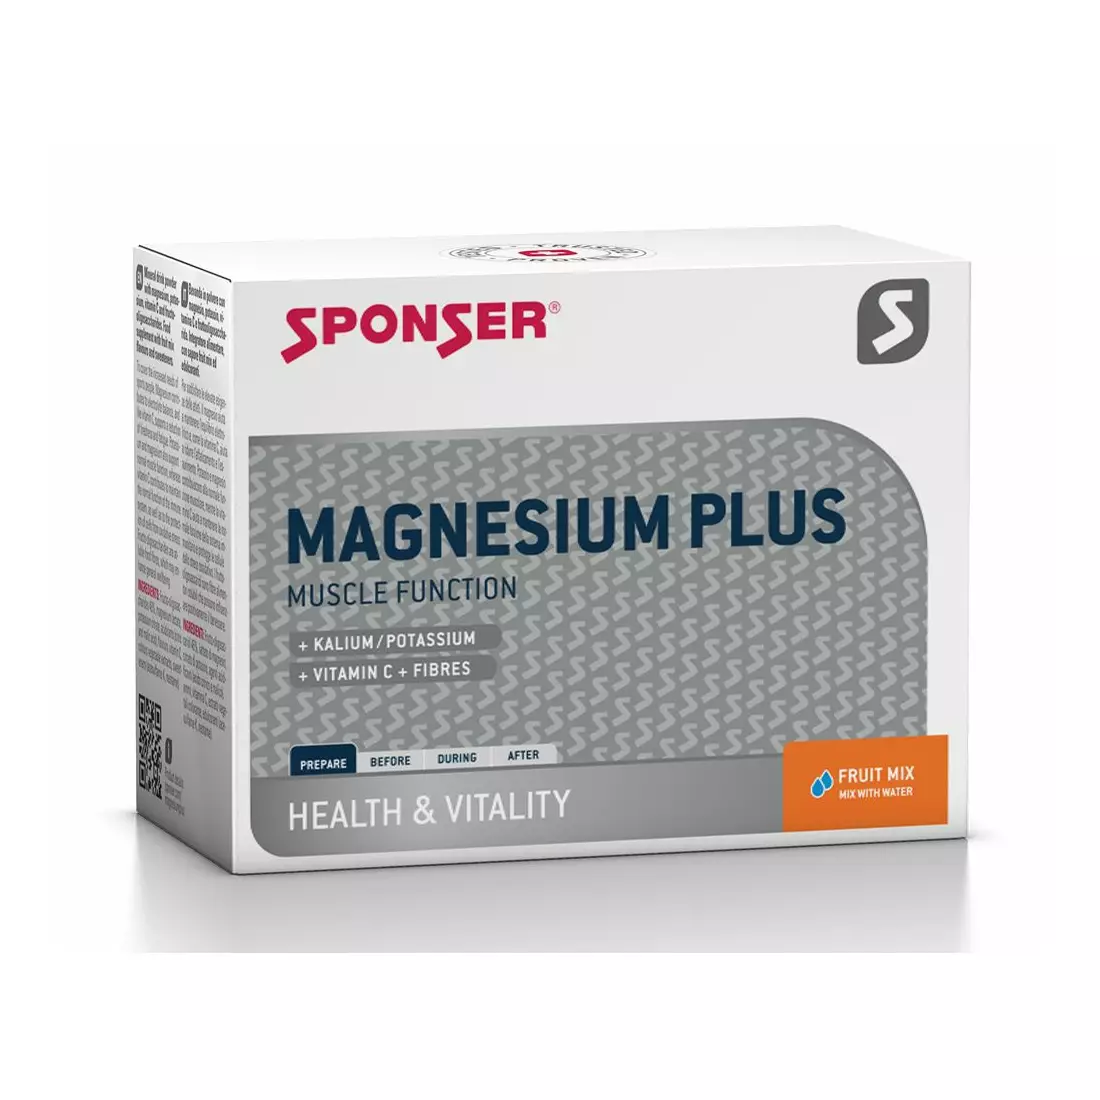 Hořčík SPONSER MAGNESIUM PLUS ovocný mix prášek (krabička s 20 sáčky x 6,5 g) 